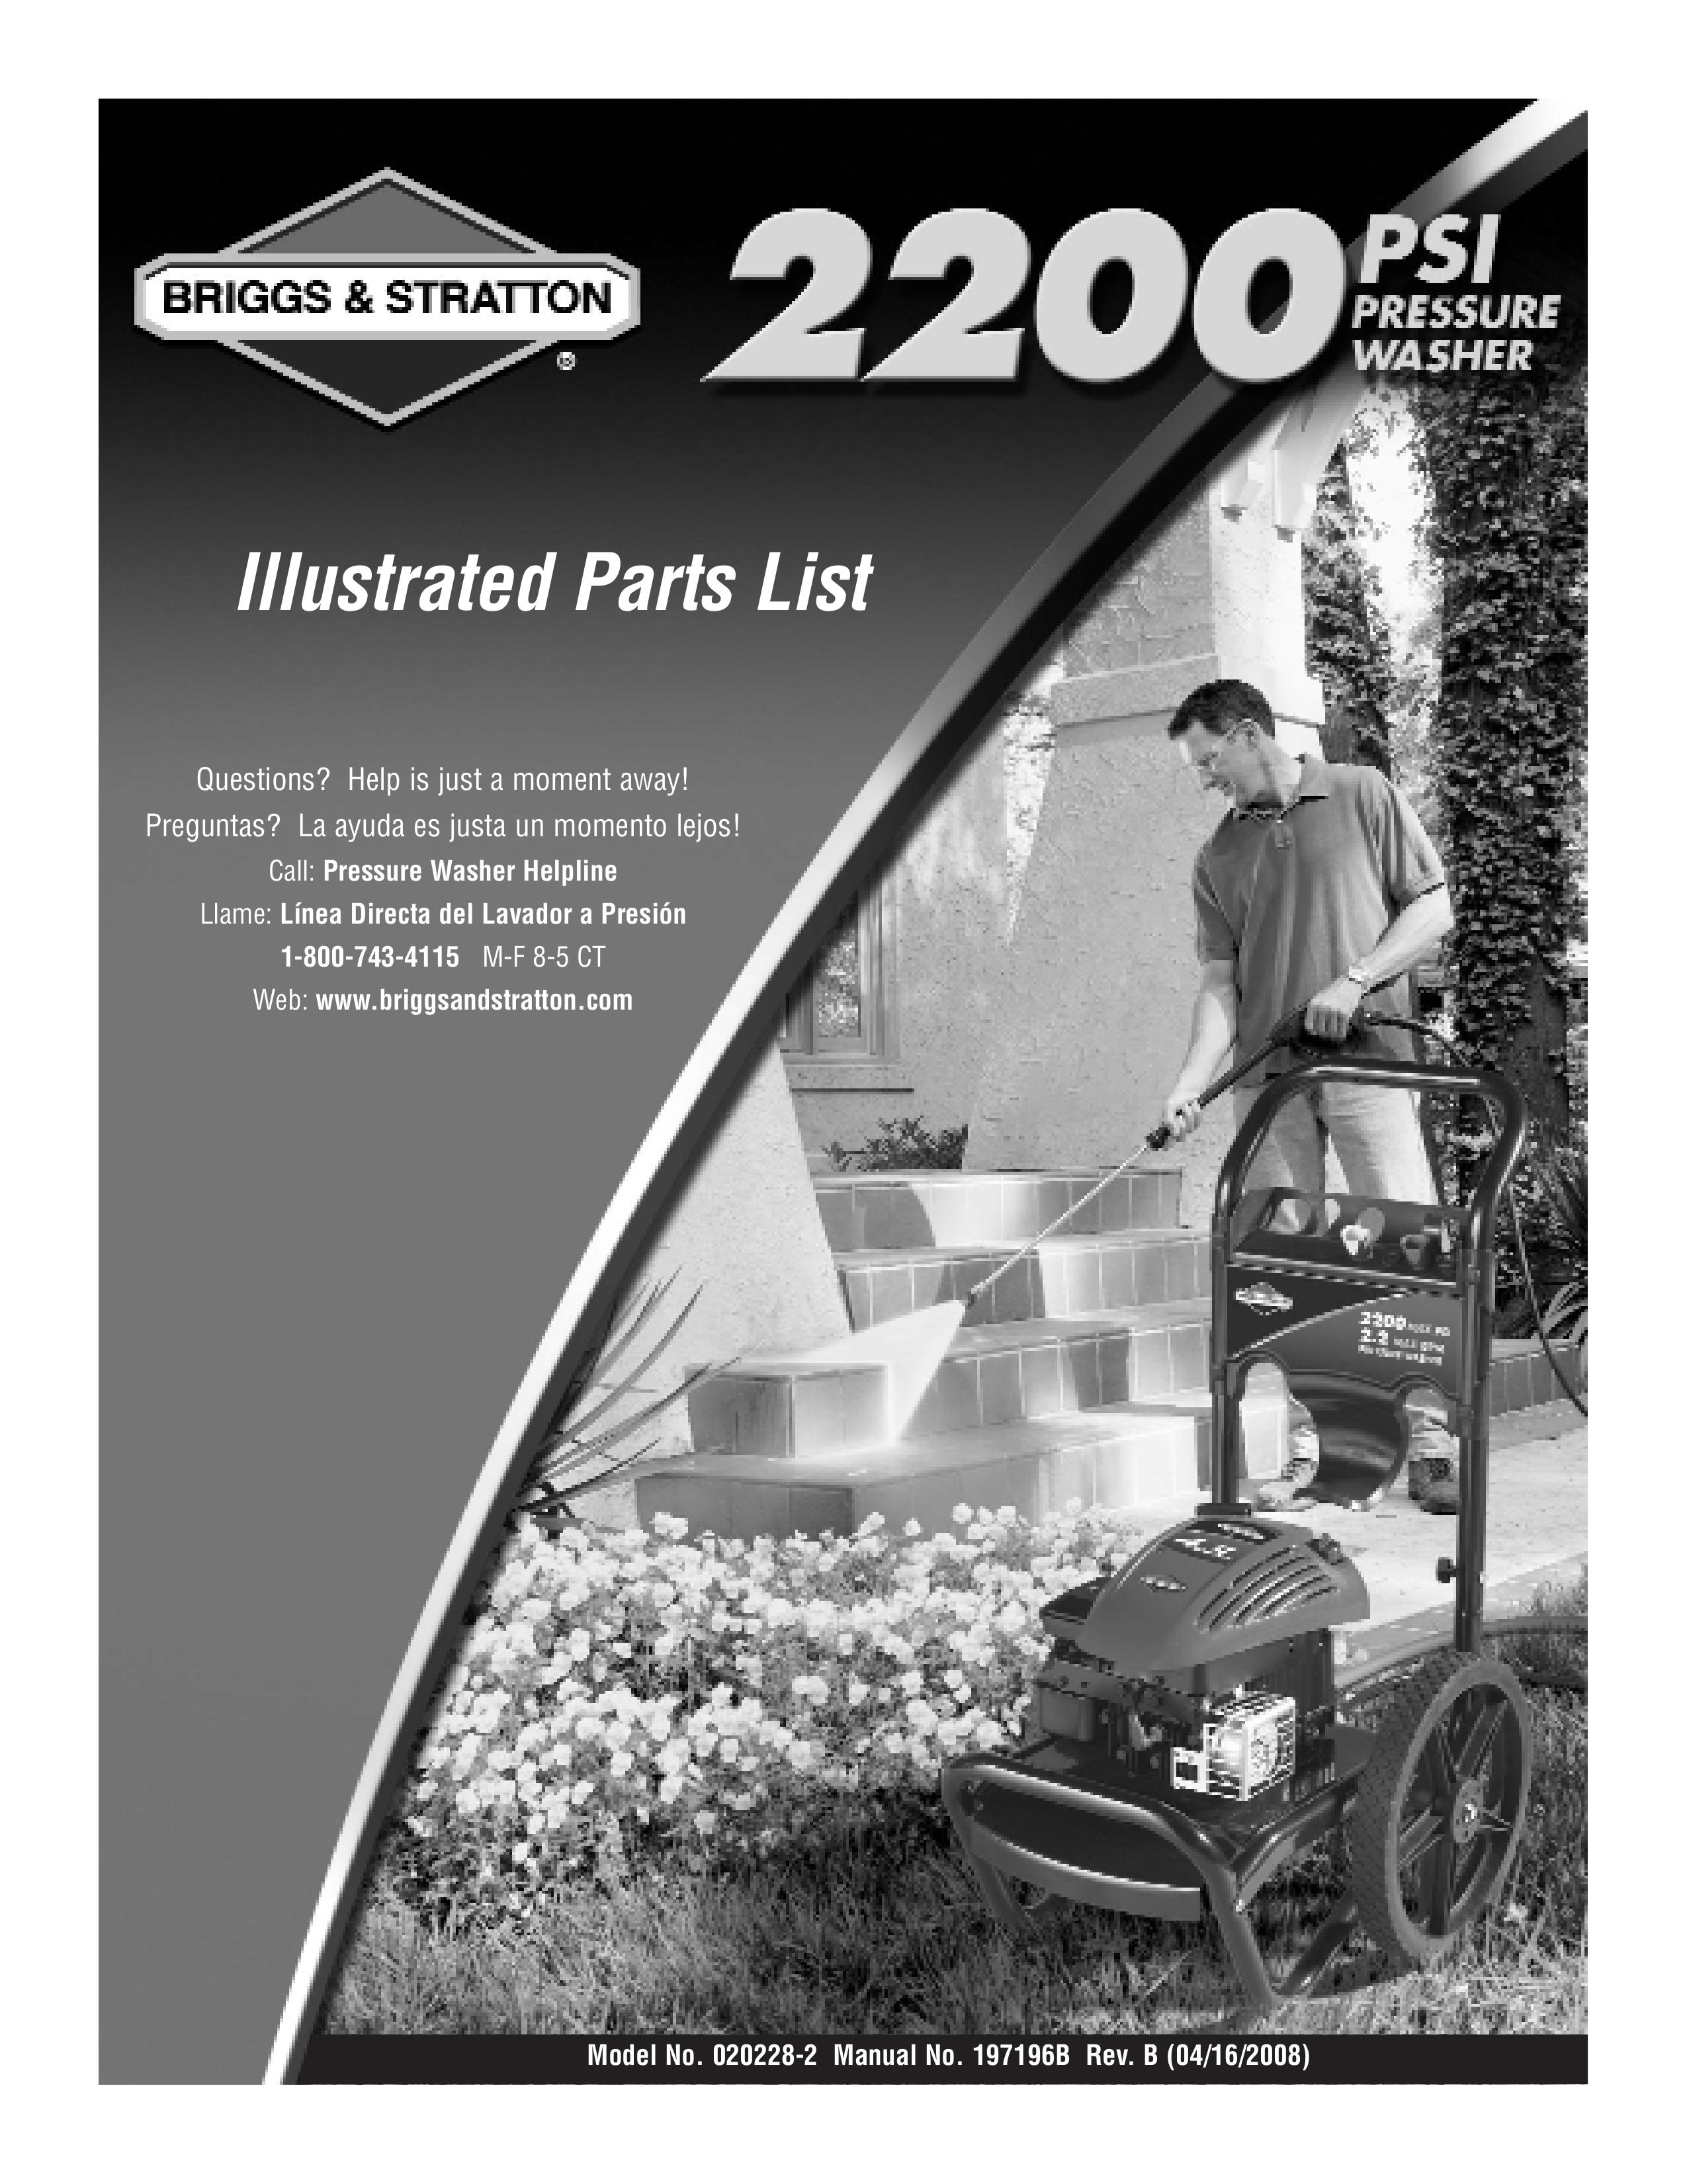 Briggs & Stratton 020228-2 Pressure Washer User Manual